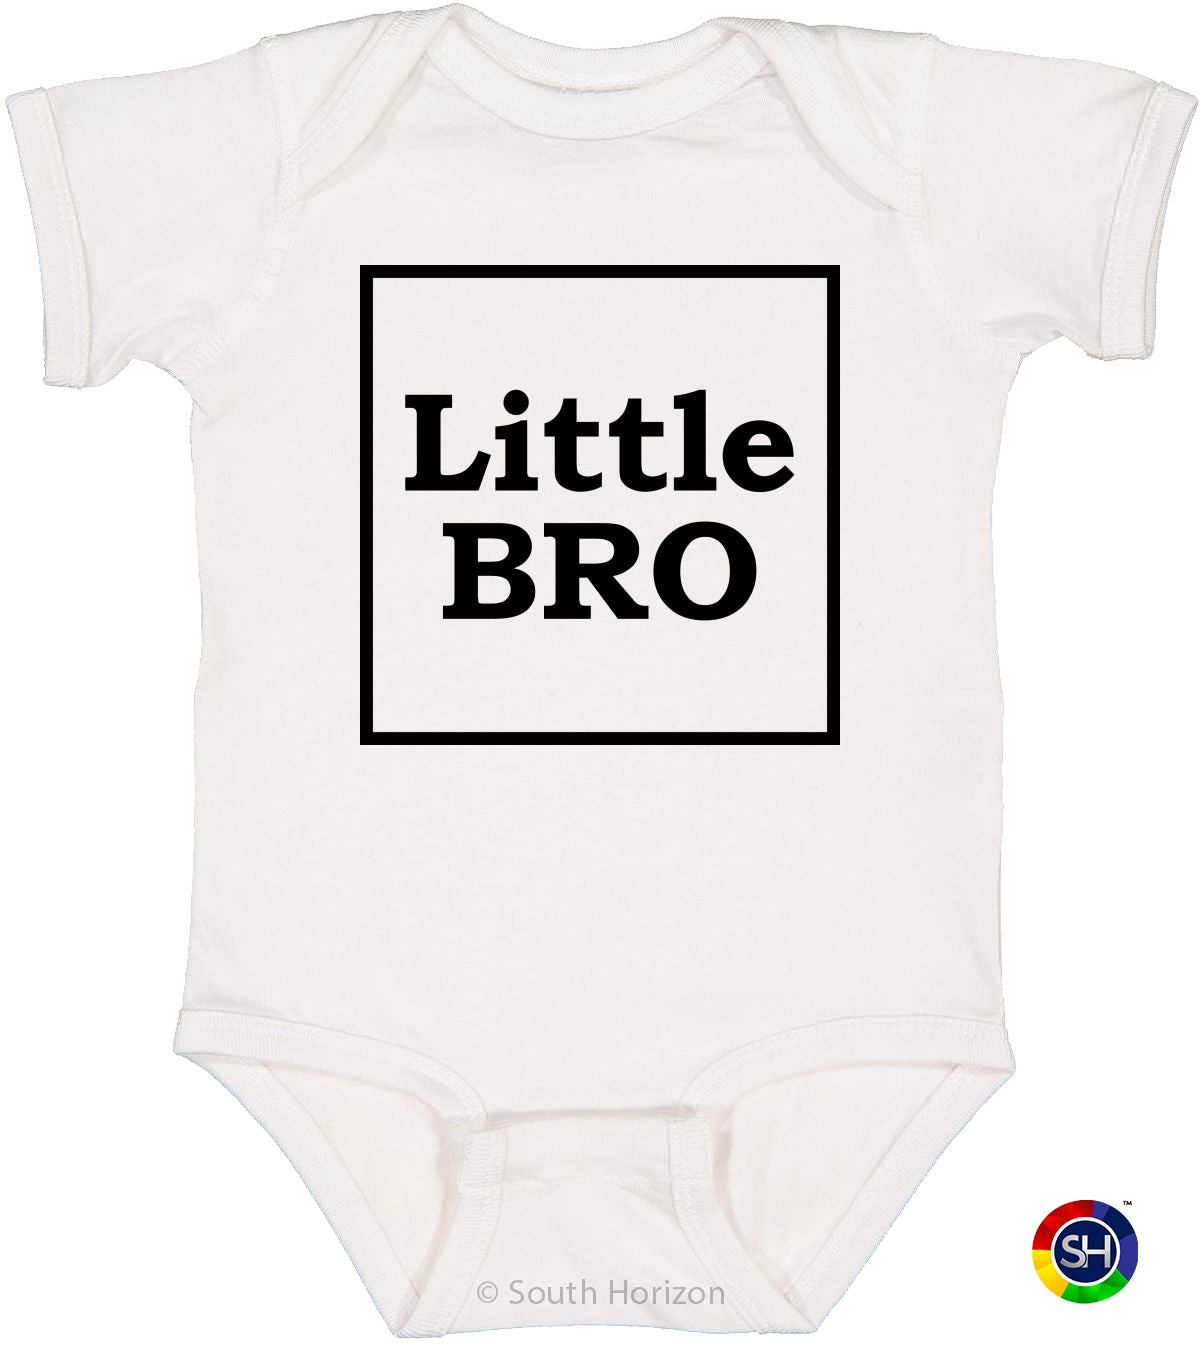 Little Bro on Infant BodySuit (#1247-10)